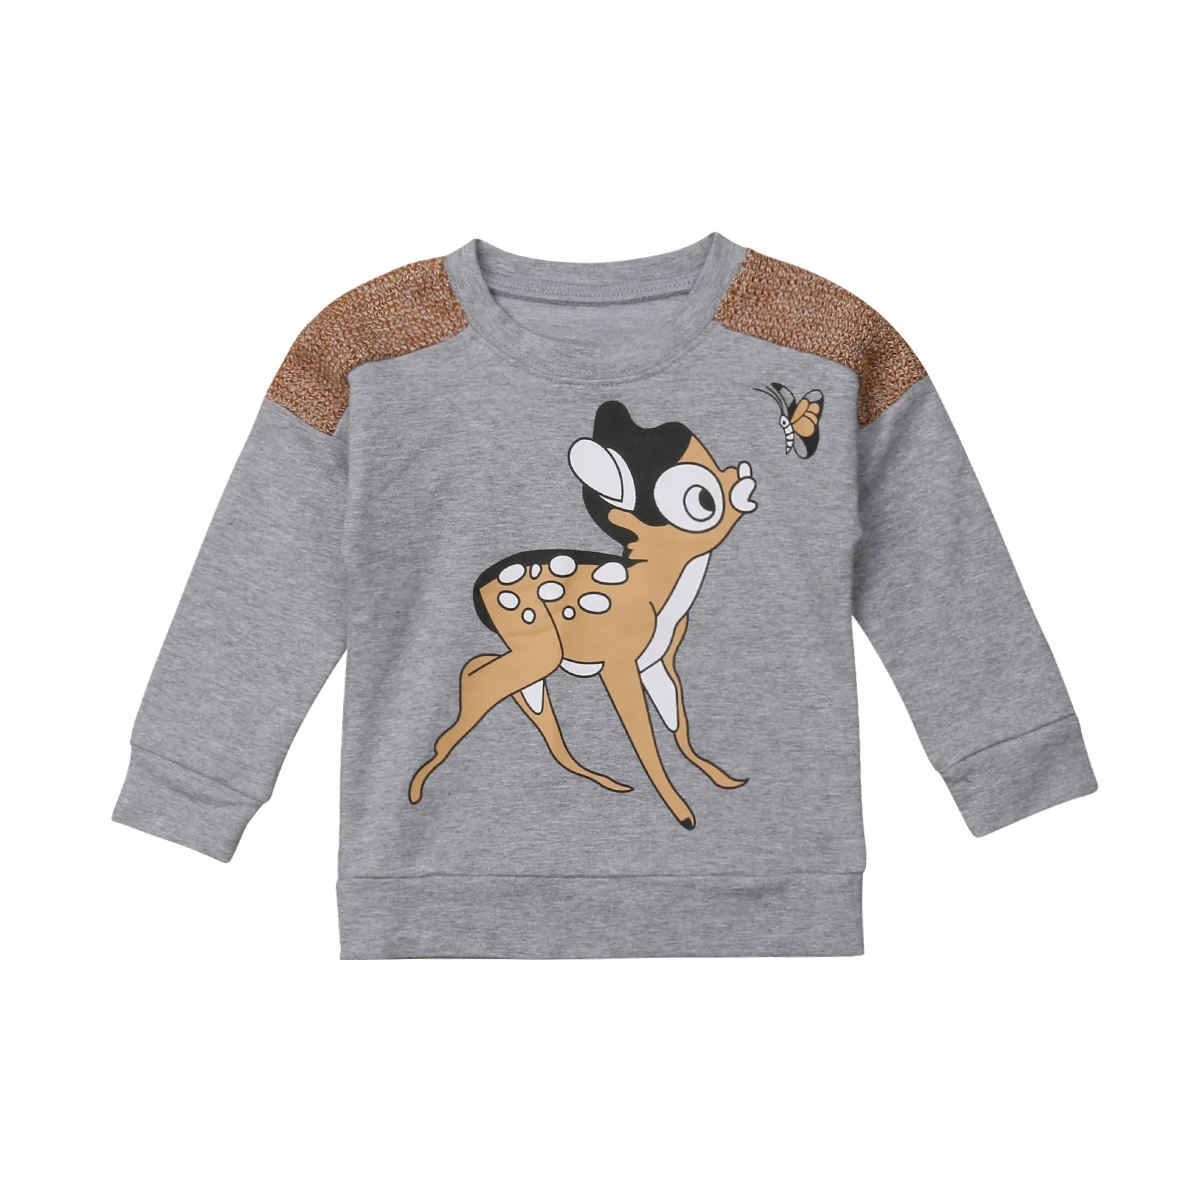 Детский свитер с оленем для маленьких мальчиков и девочек, пуловер, хлопковая серая одежда, размер 2-6 лет